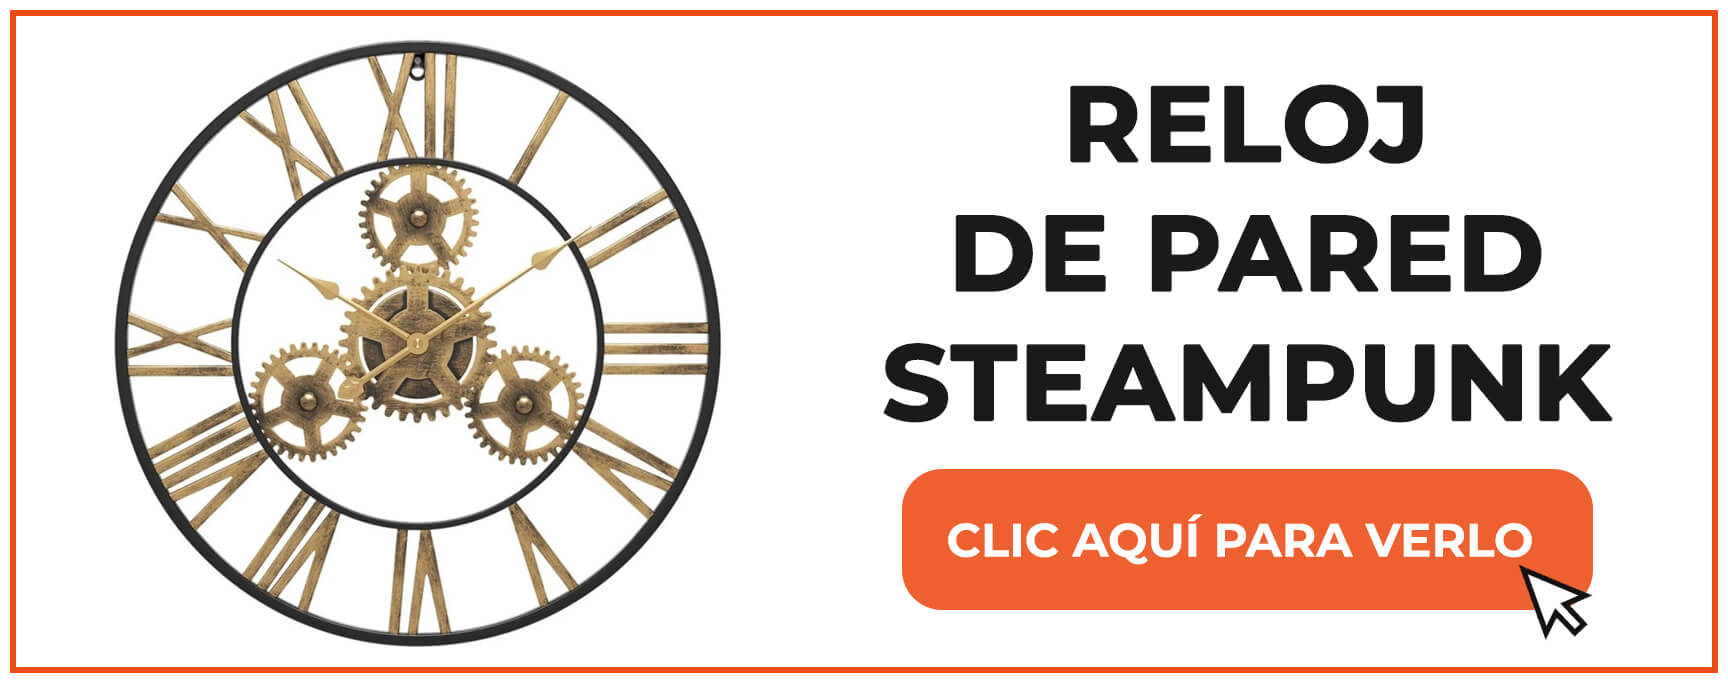 reloj de pared steampunk